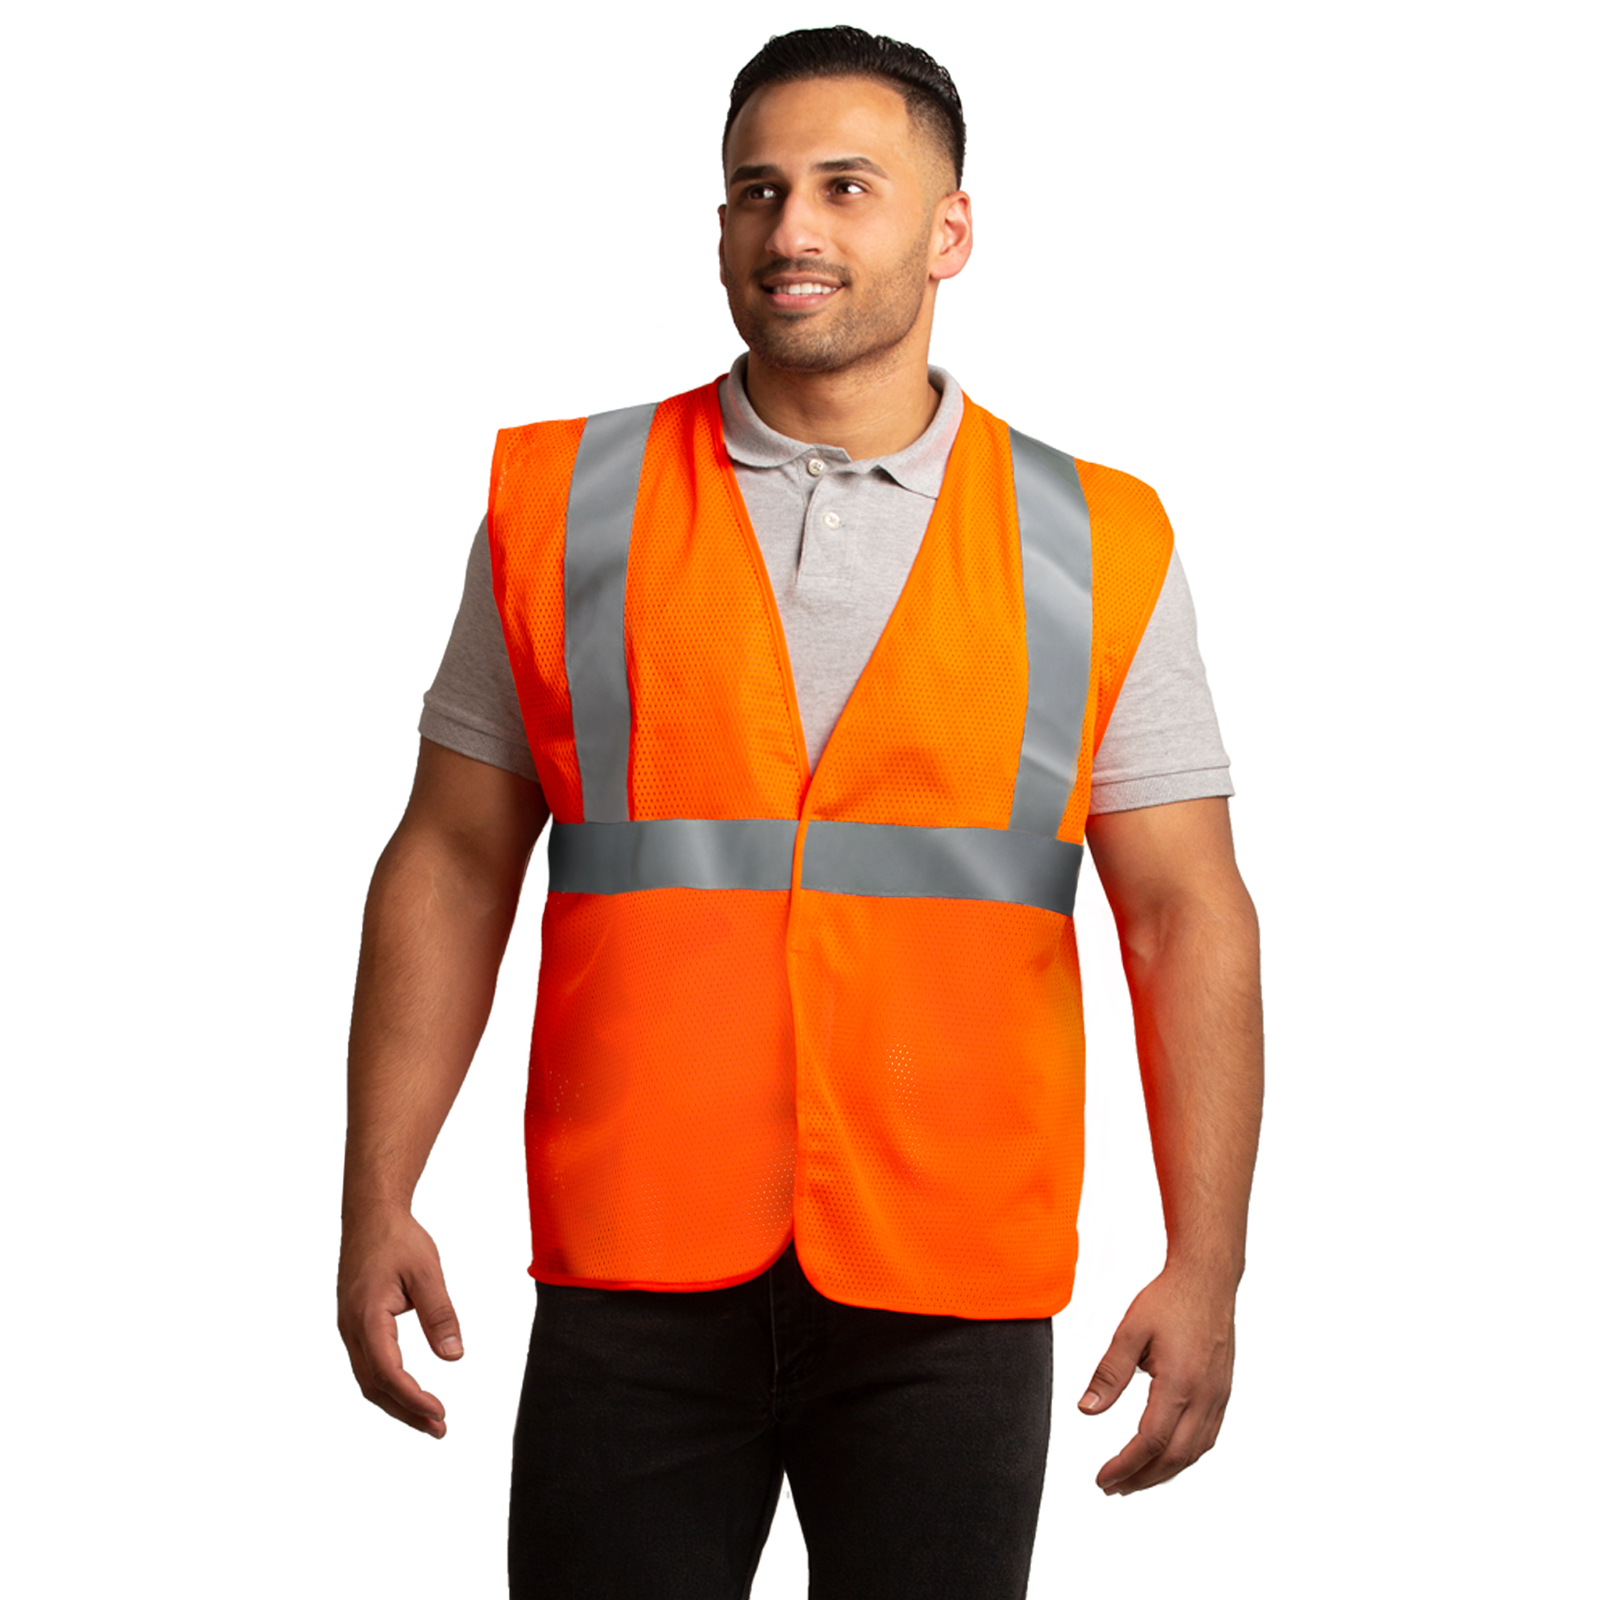 Printed Hi-Vis Mesh Safety Vest with 2” Reflective Strips and Pocket -  Orange